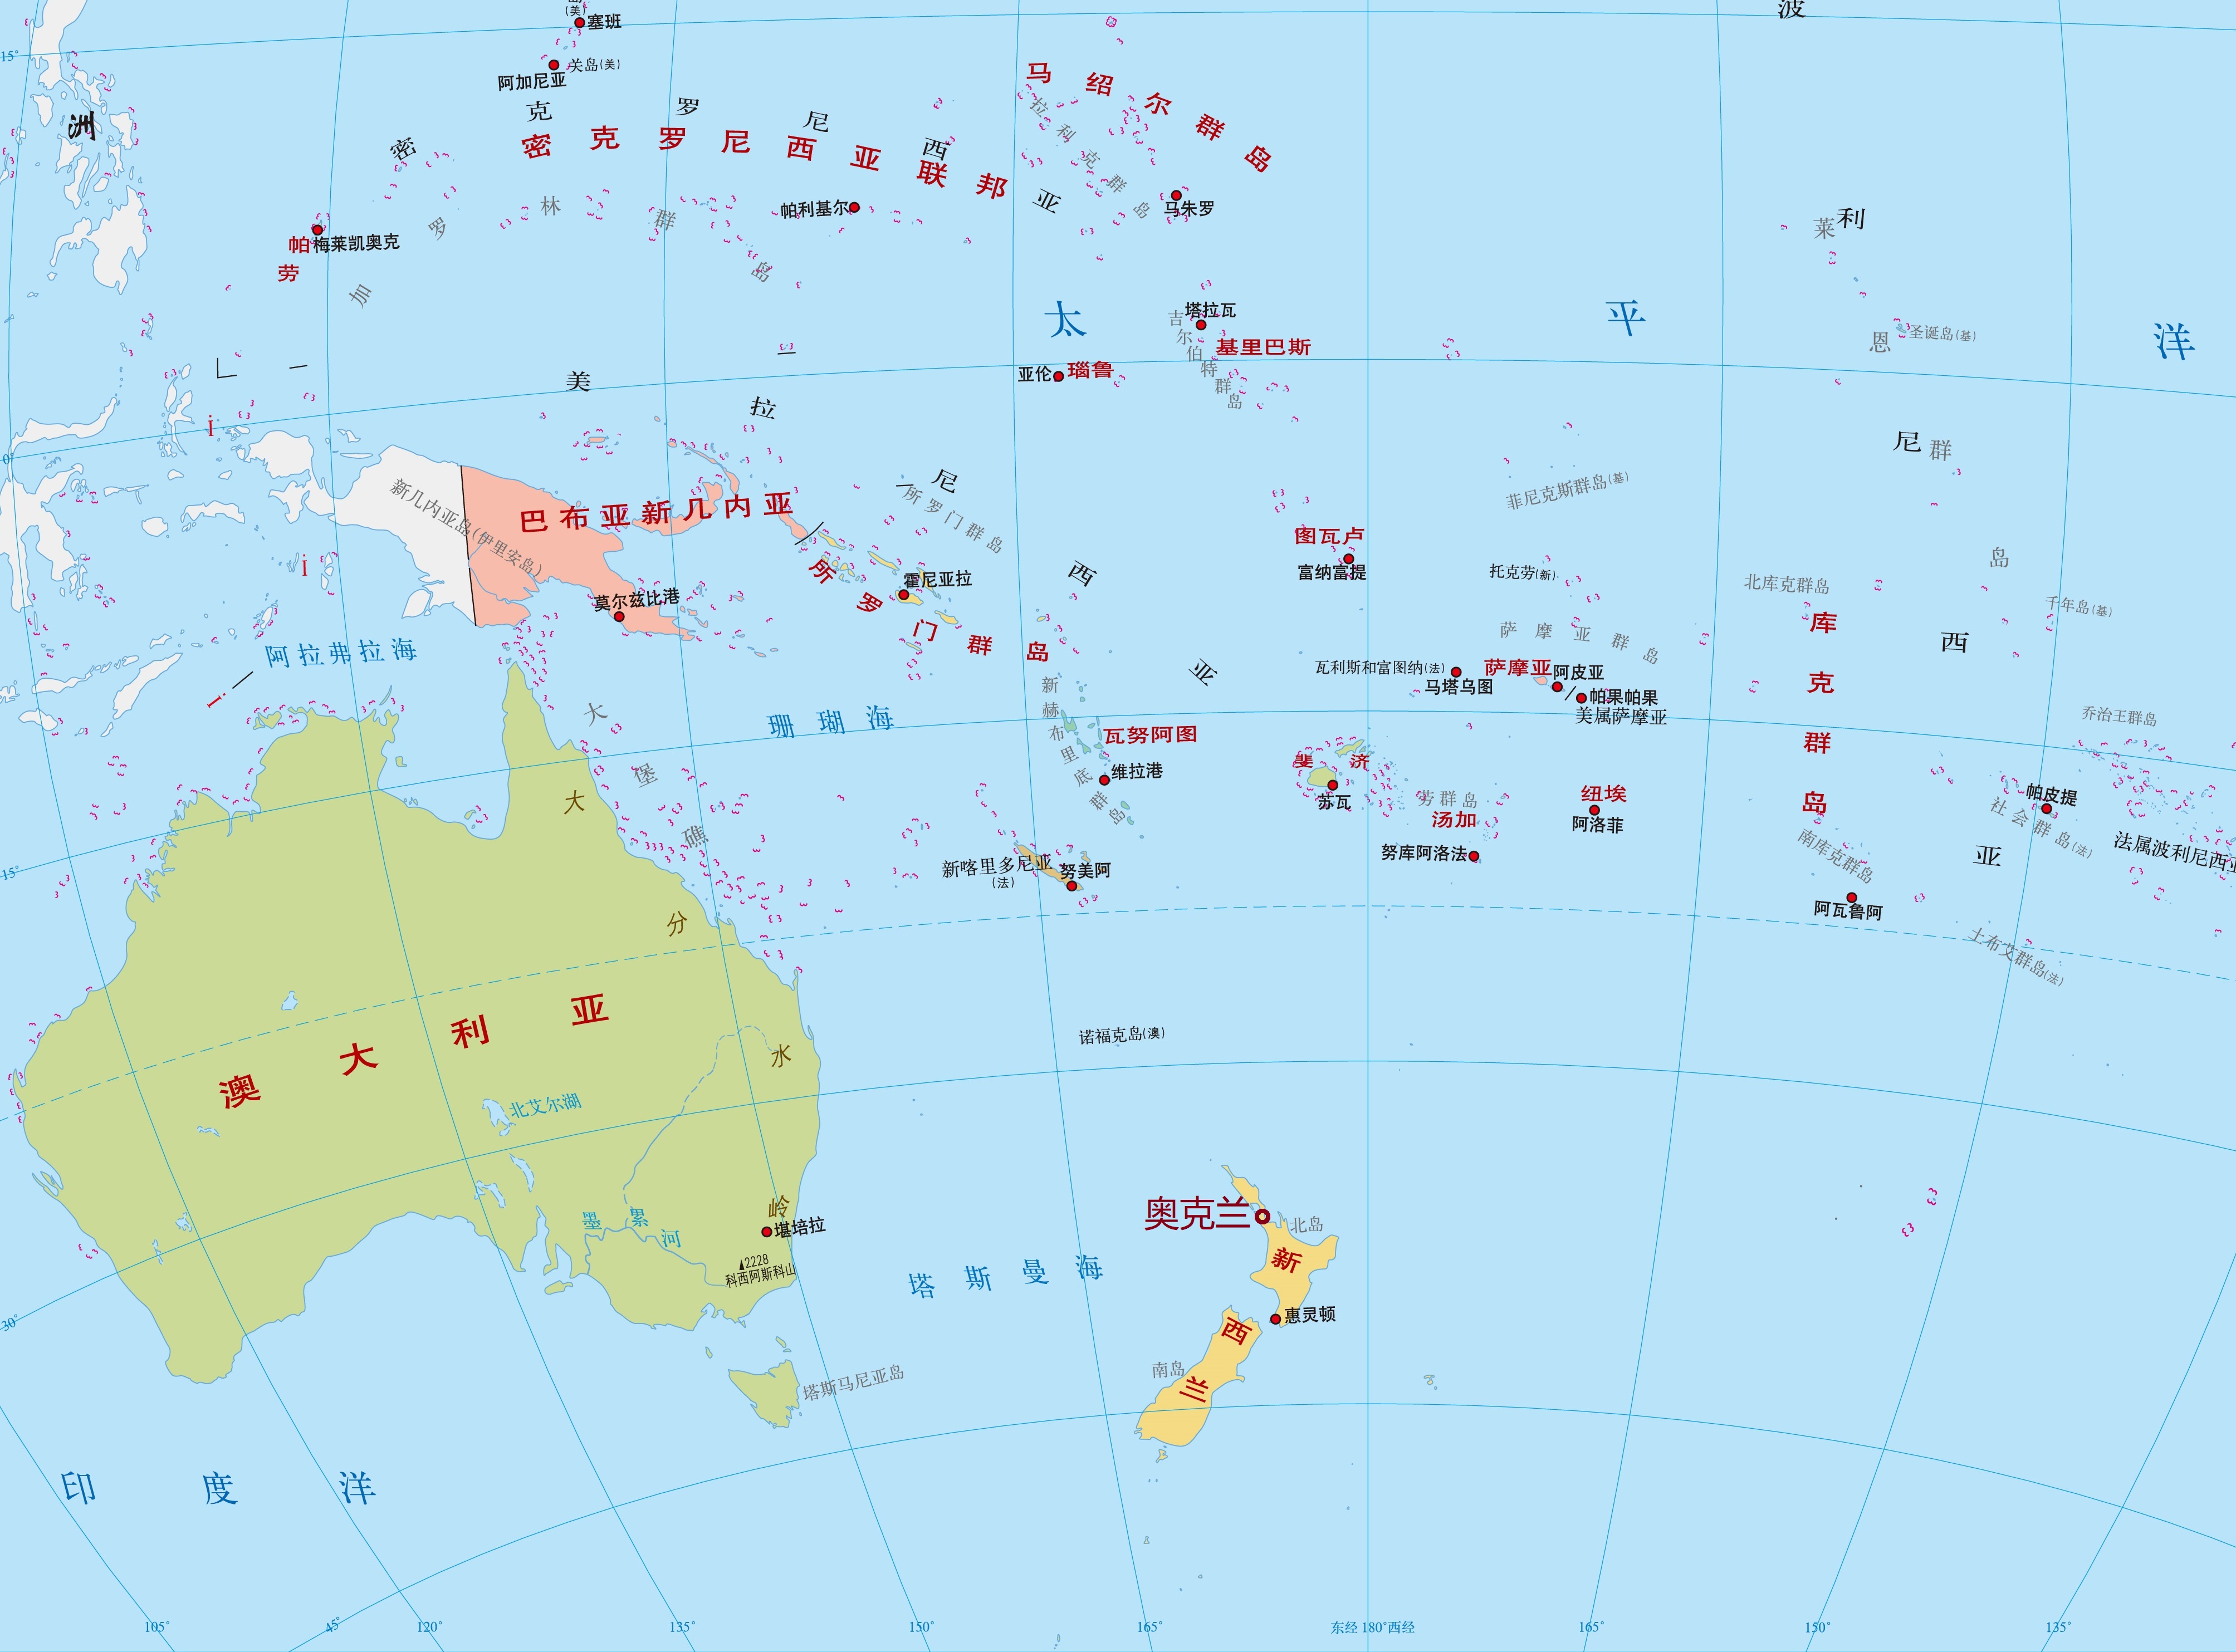 "帆船之都"奥克兰:新西兰最大城市,也是全国经济中心气候宜人